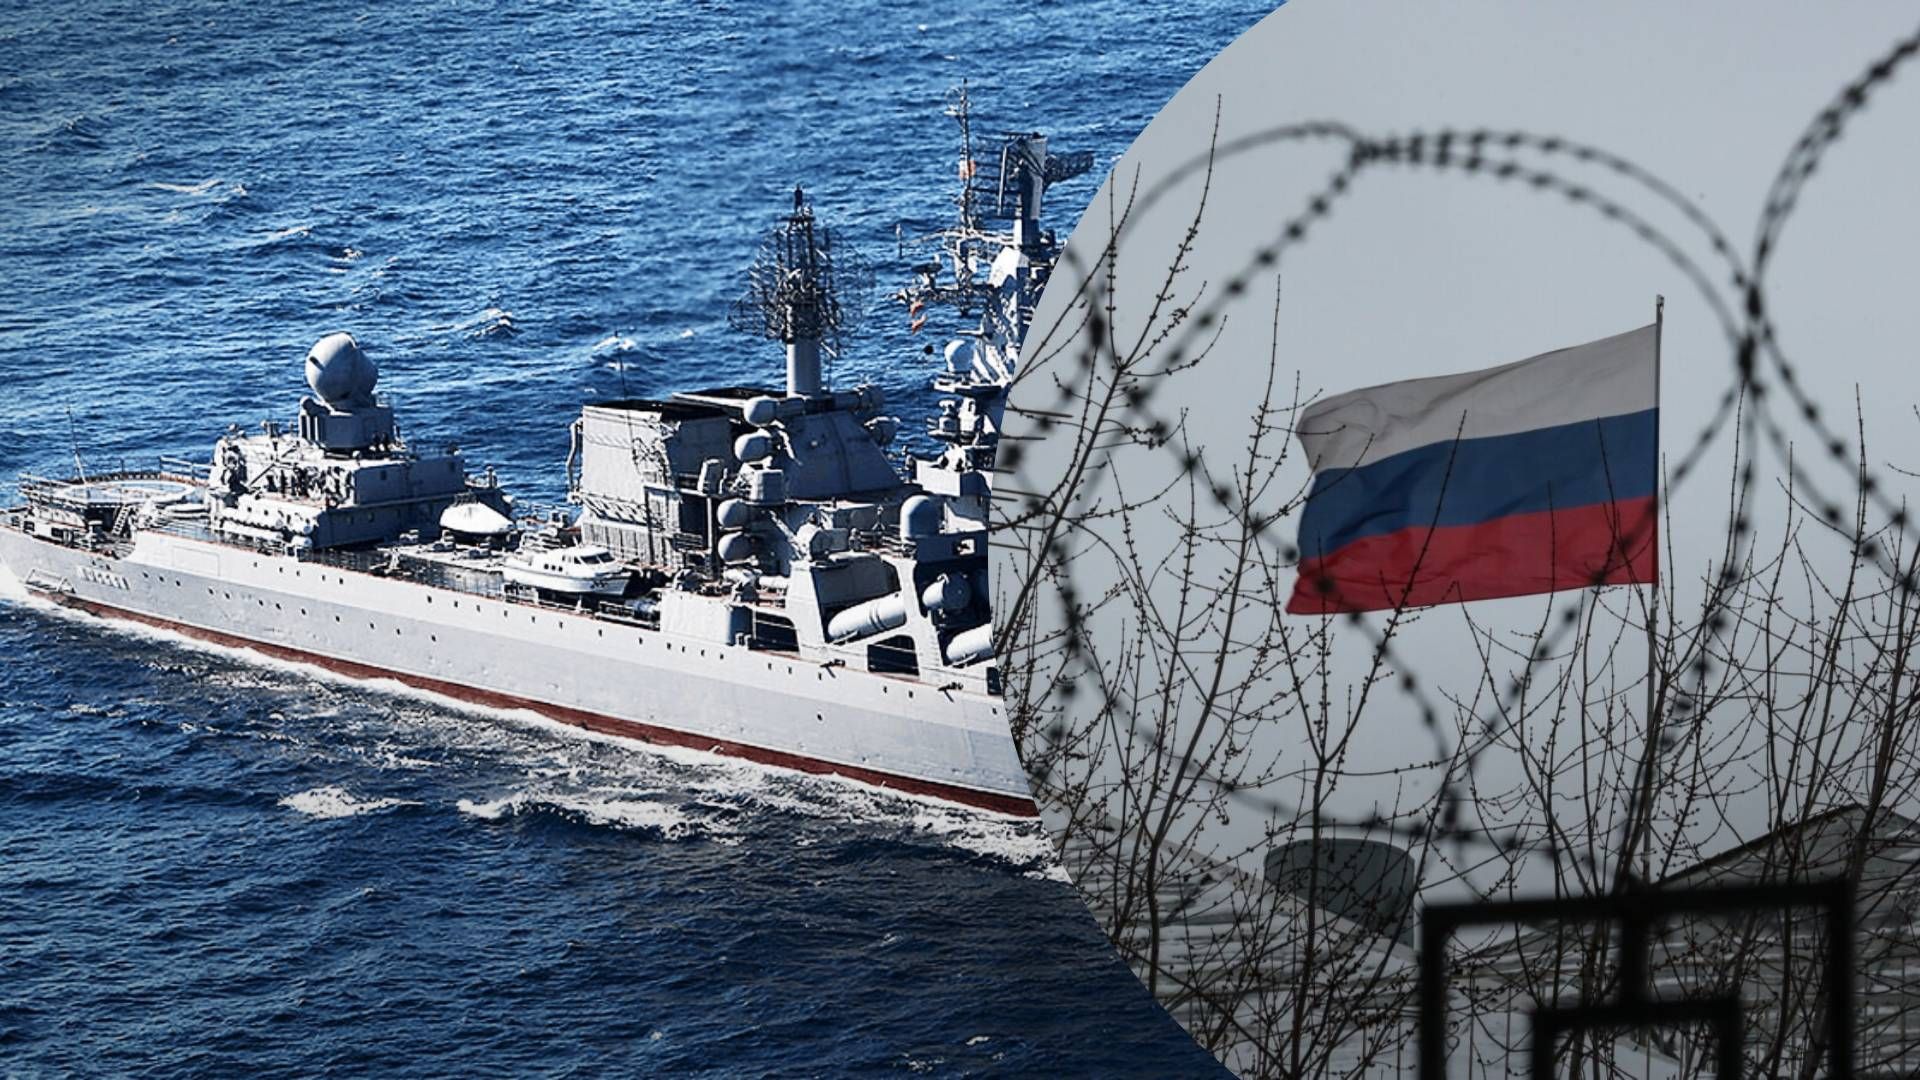 4 НАТО вивчає досвід України в Чорному морі, щоб адаптуватися до змін сучасного бою - адмірал - 24 Канал